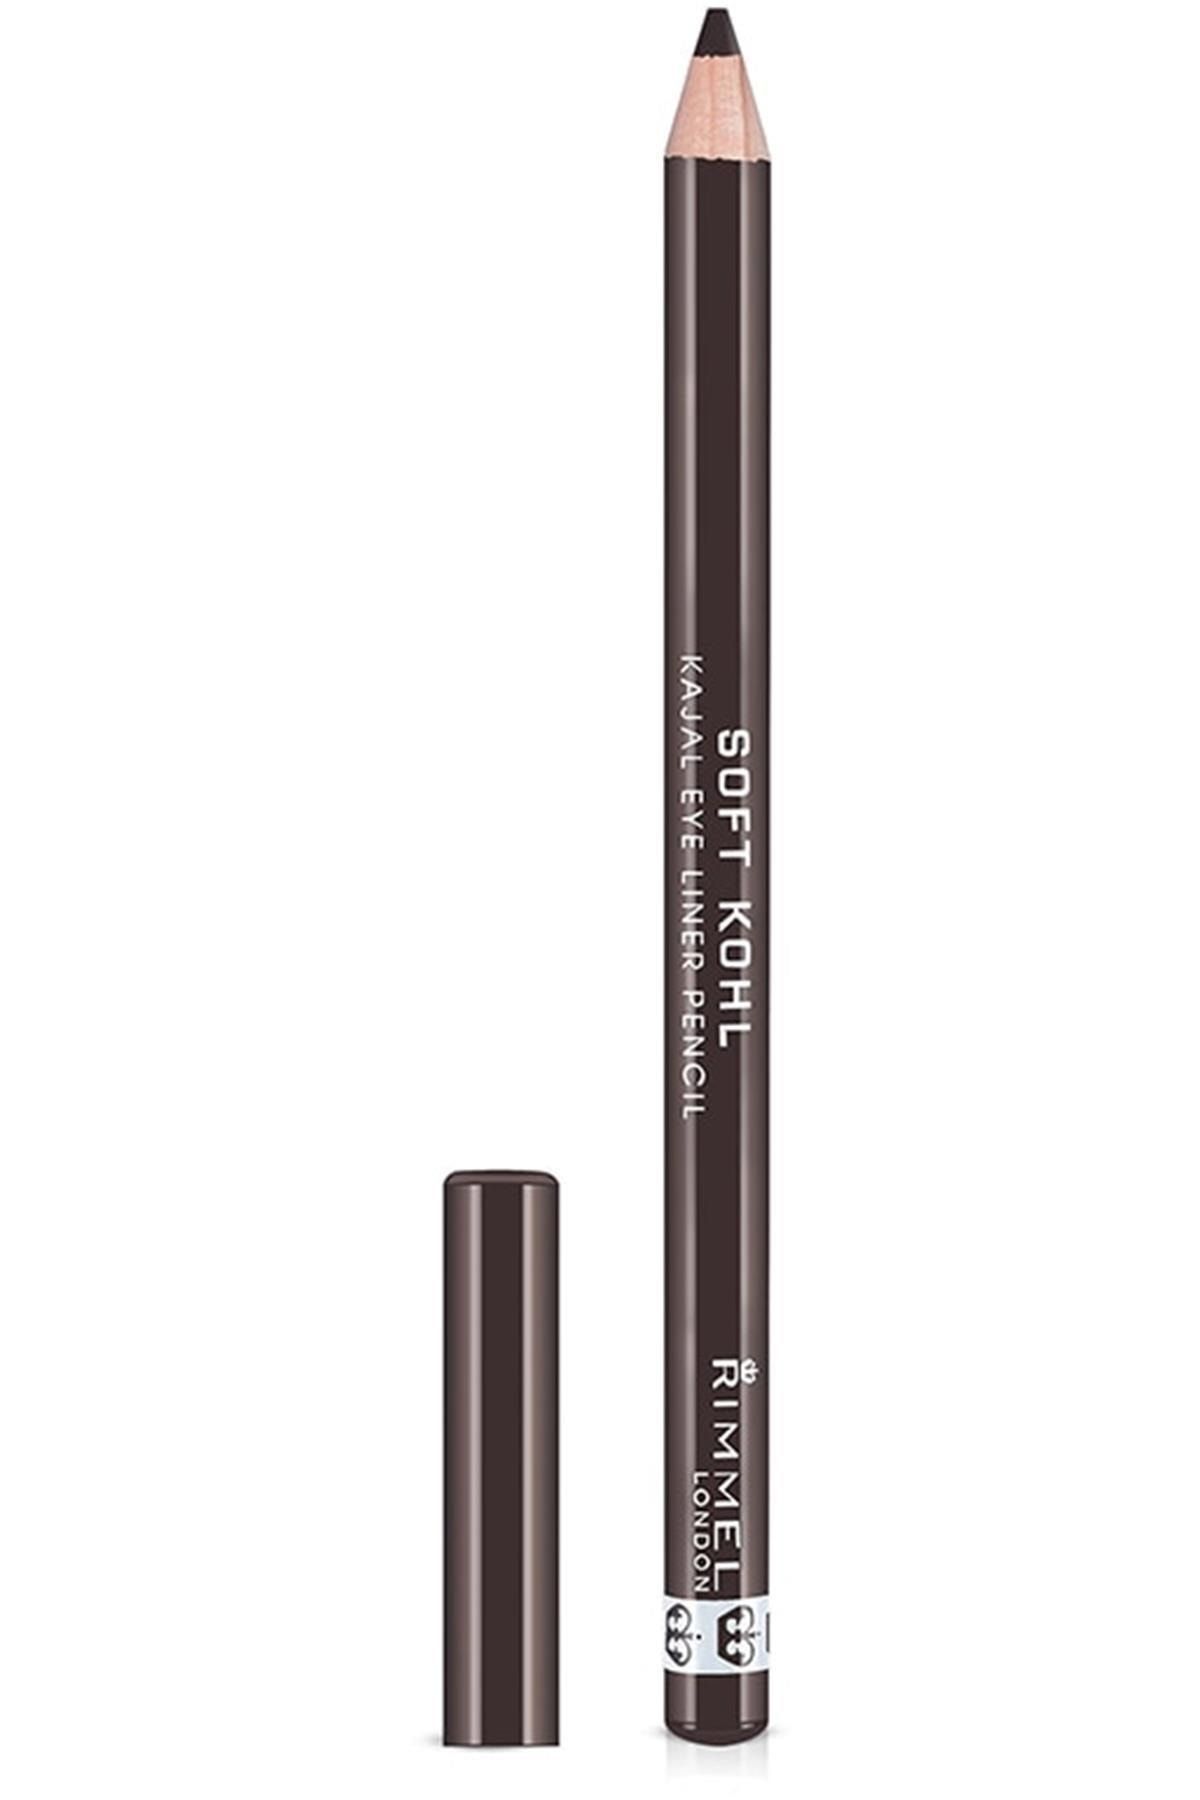 Rimmel London Soft Kohl Kajal Eyeliner Pencil 001 Sable Brown